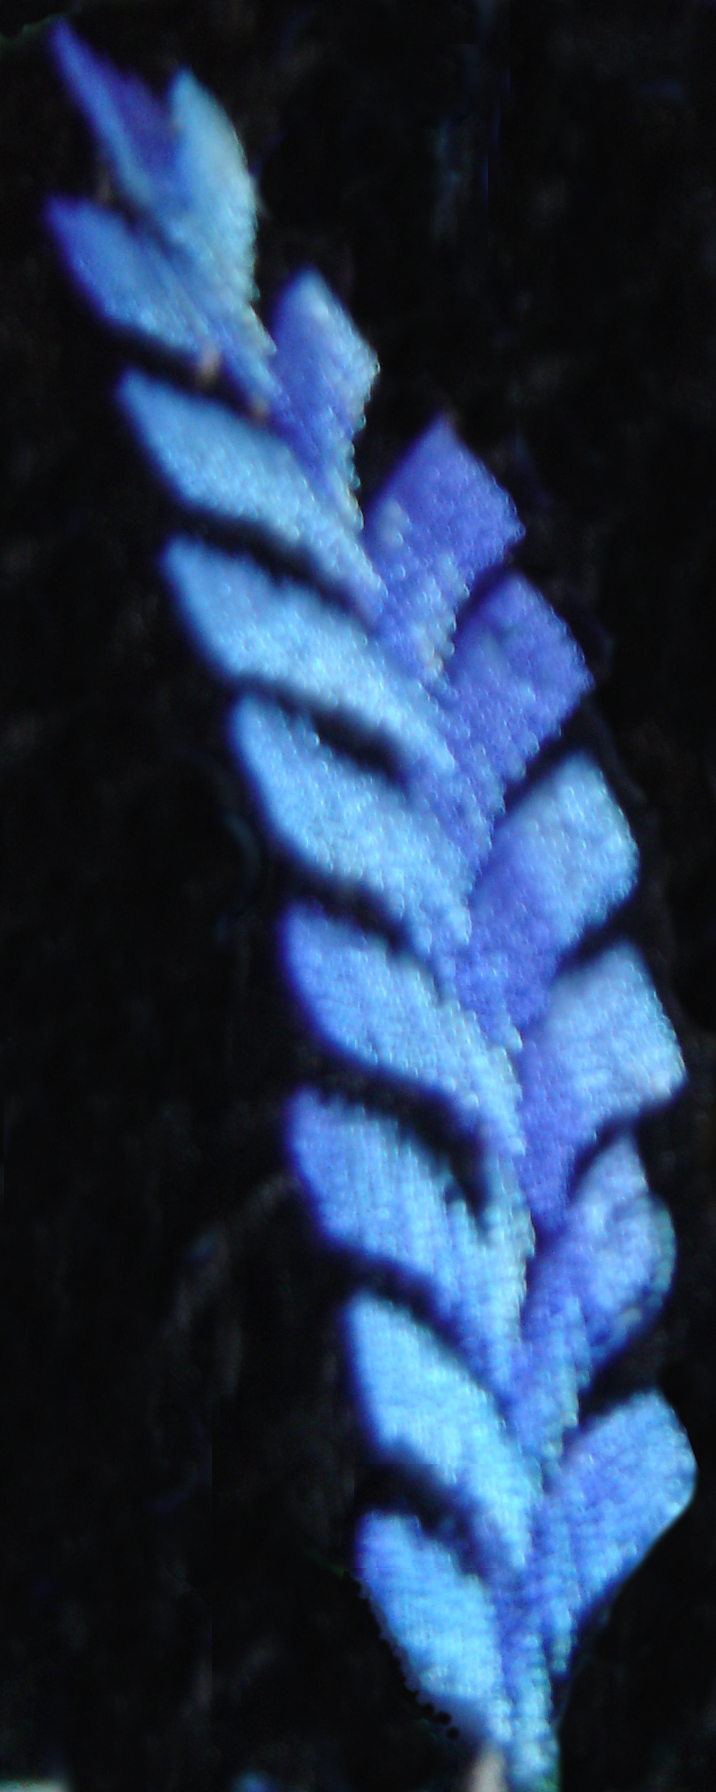 A motif from my Artesania Pop Wuh waistcoat. It 
looks like a light-blue/purple ear of wheat or fern leaf.